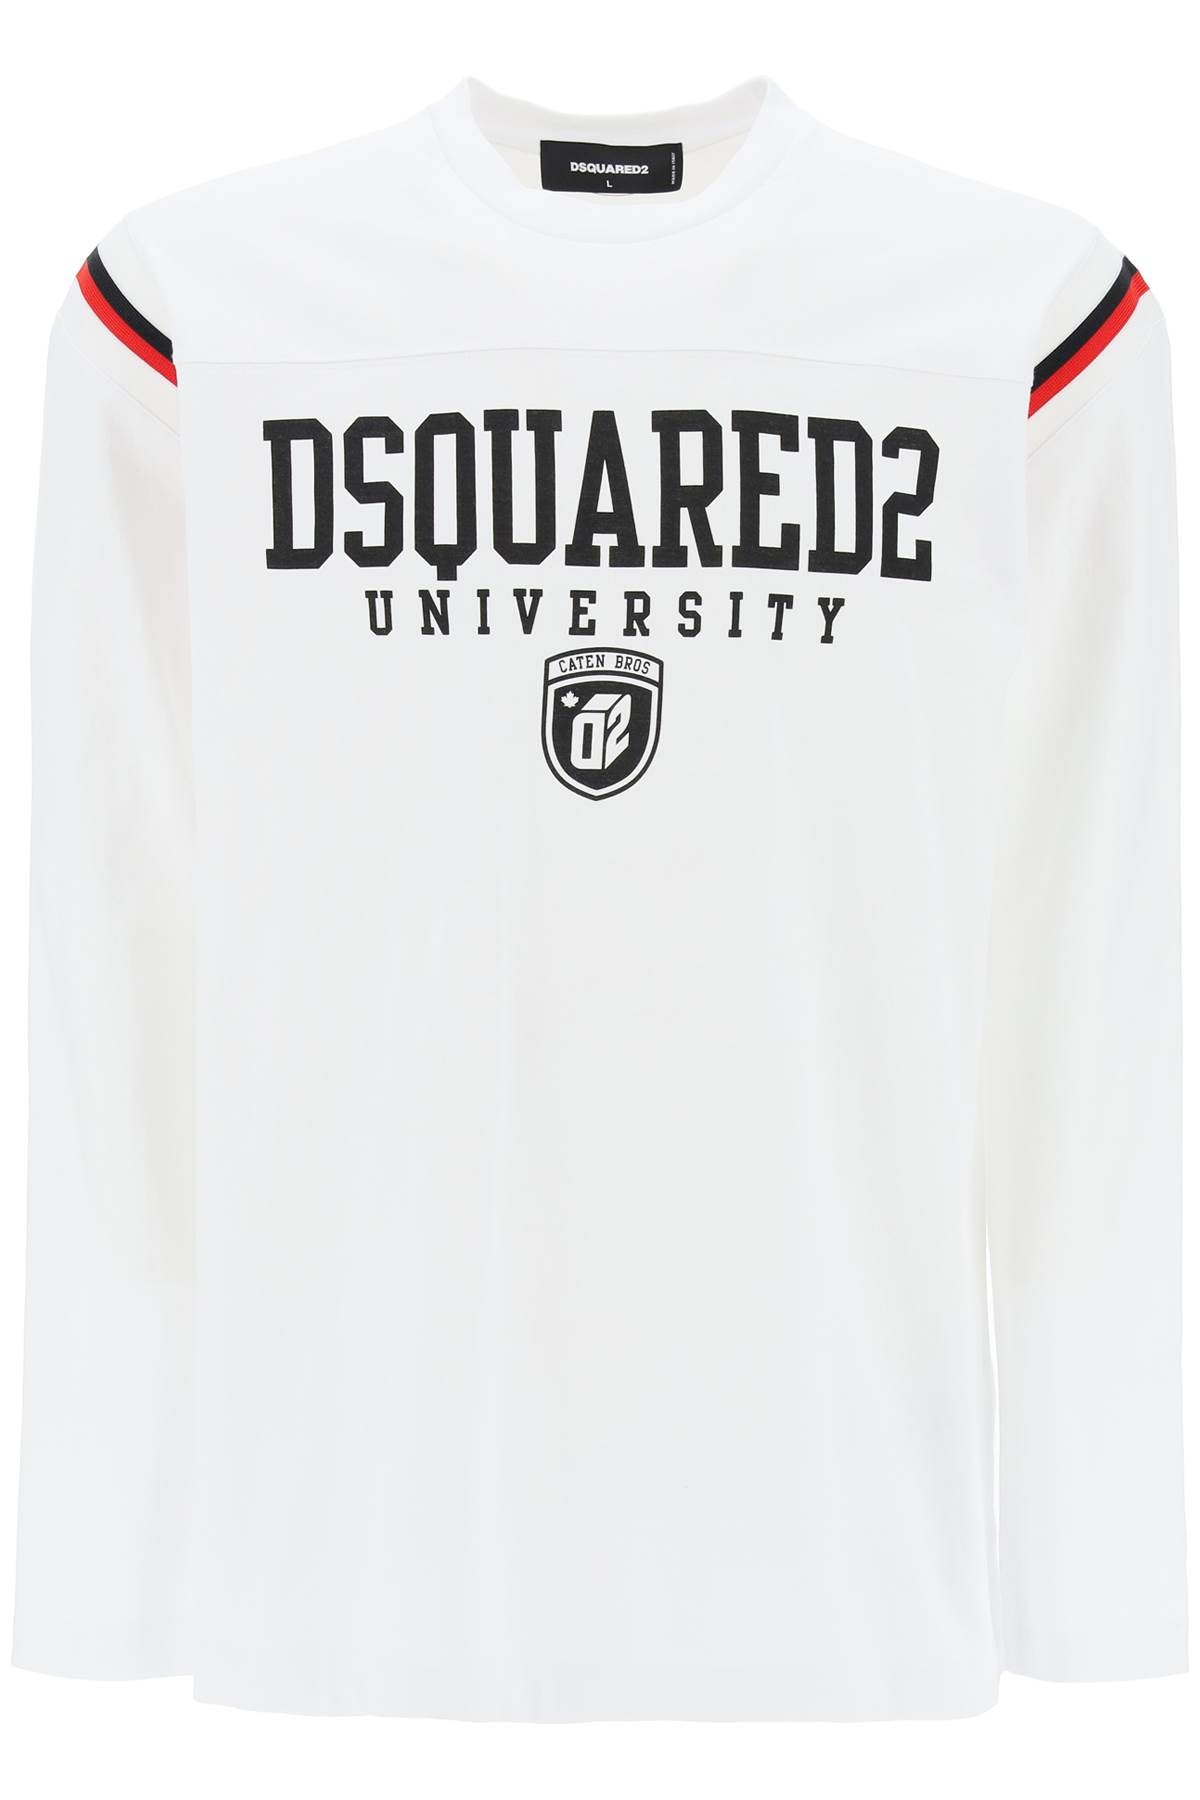 Dsquared2 long-sleeved varsity t-shirt S74GD1218 S24658 WHITE